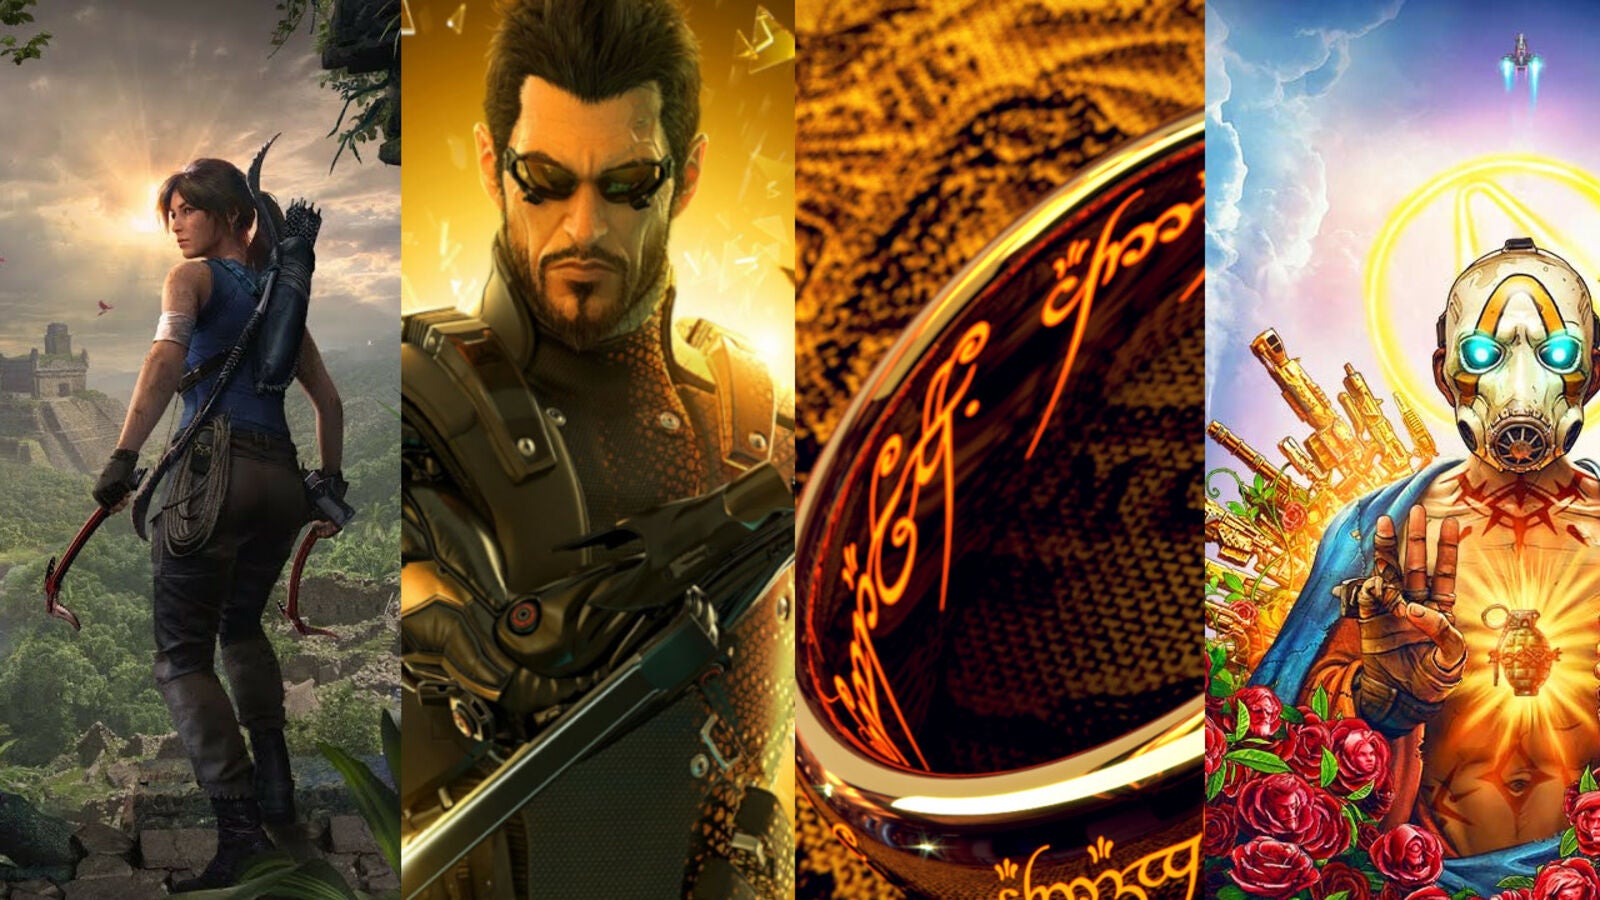 Immagine di Tomb Raider e Deus Ex sono tra le oltre 800 IP possedute dal colosso Embracer Group